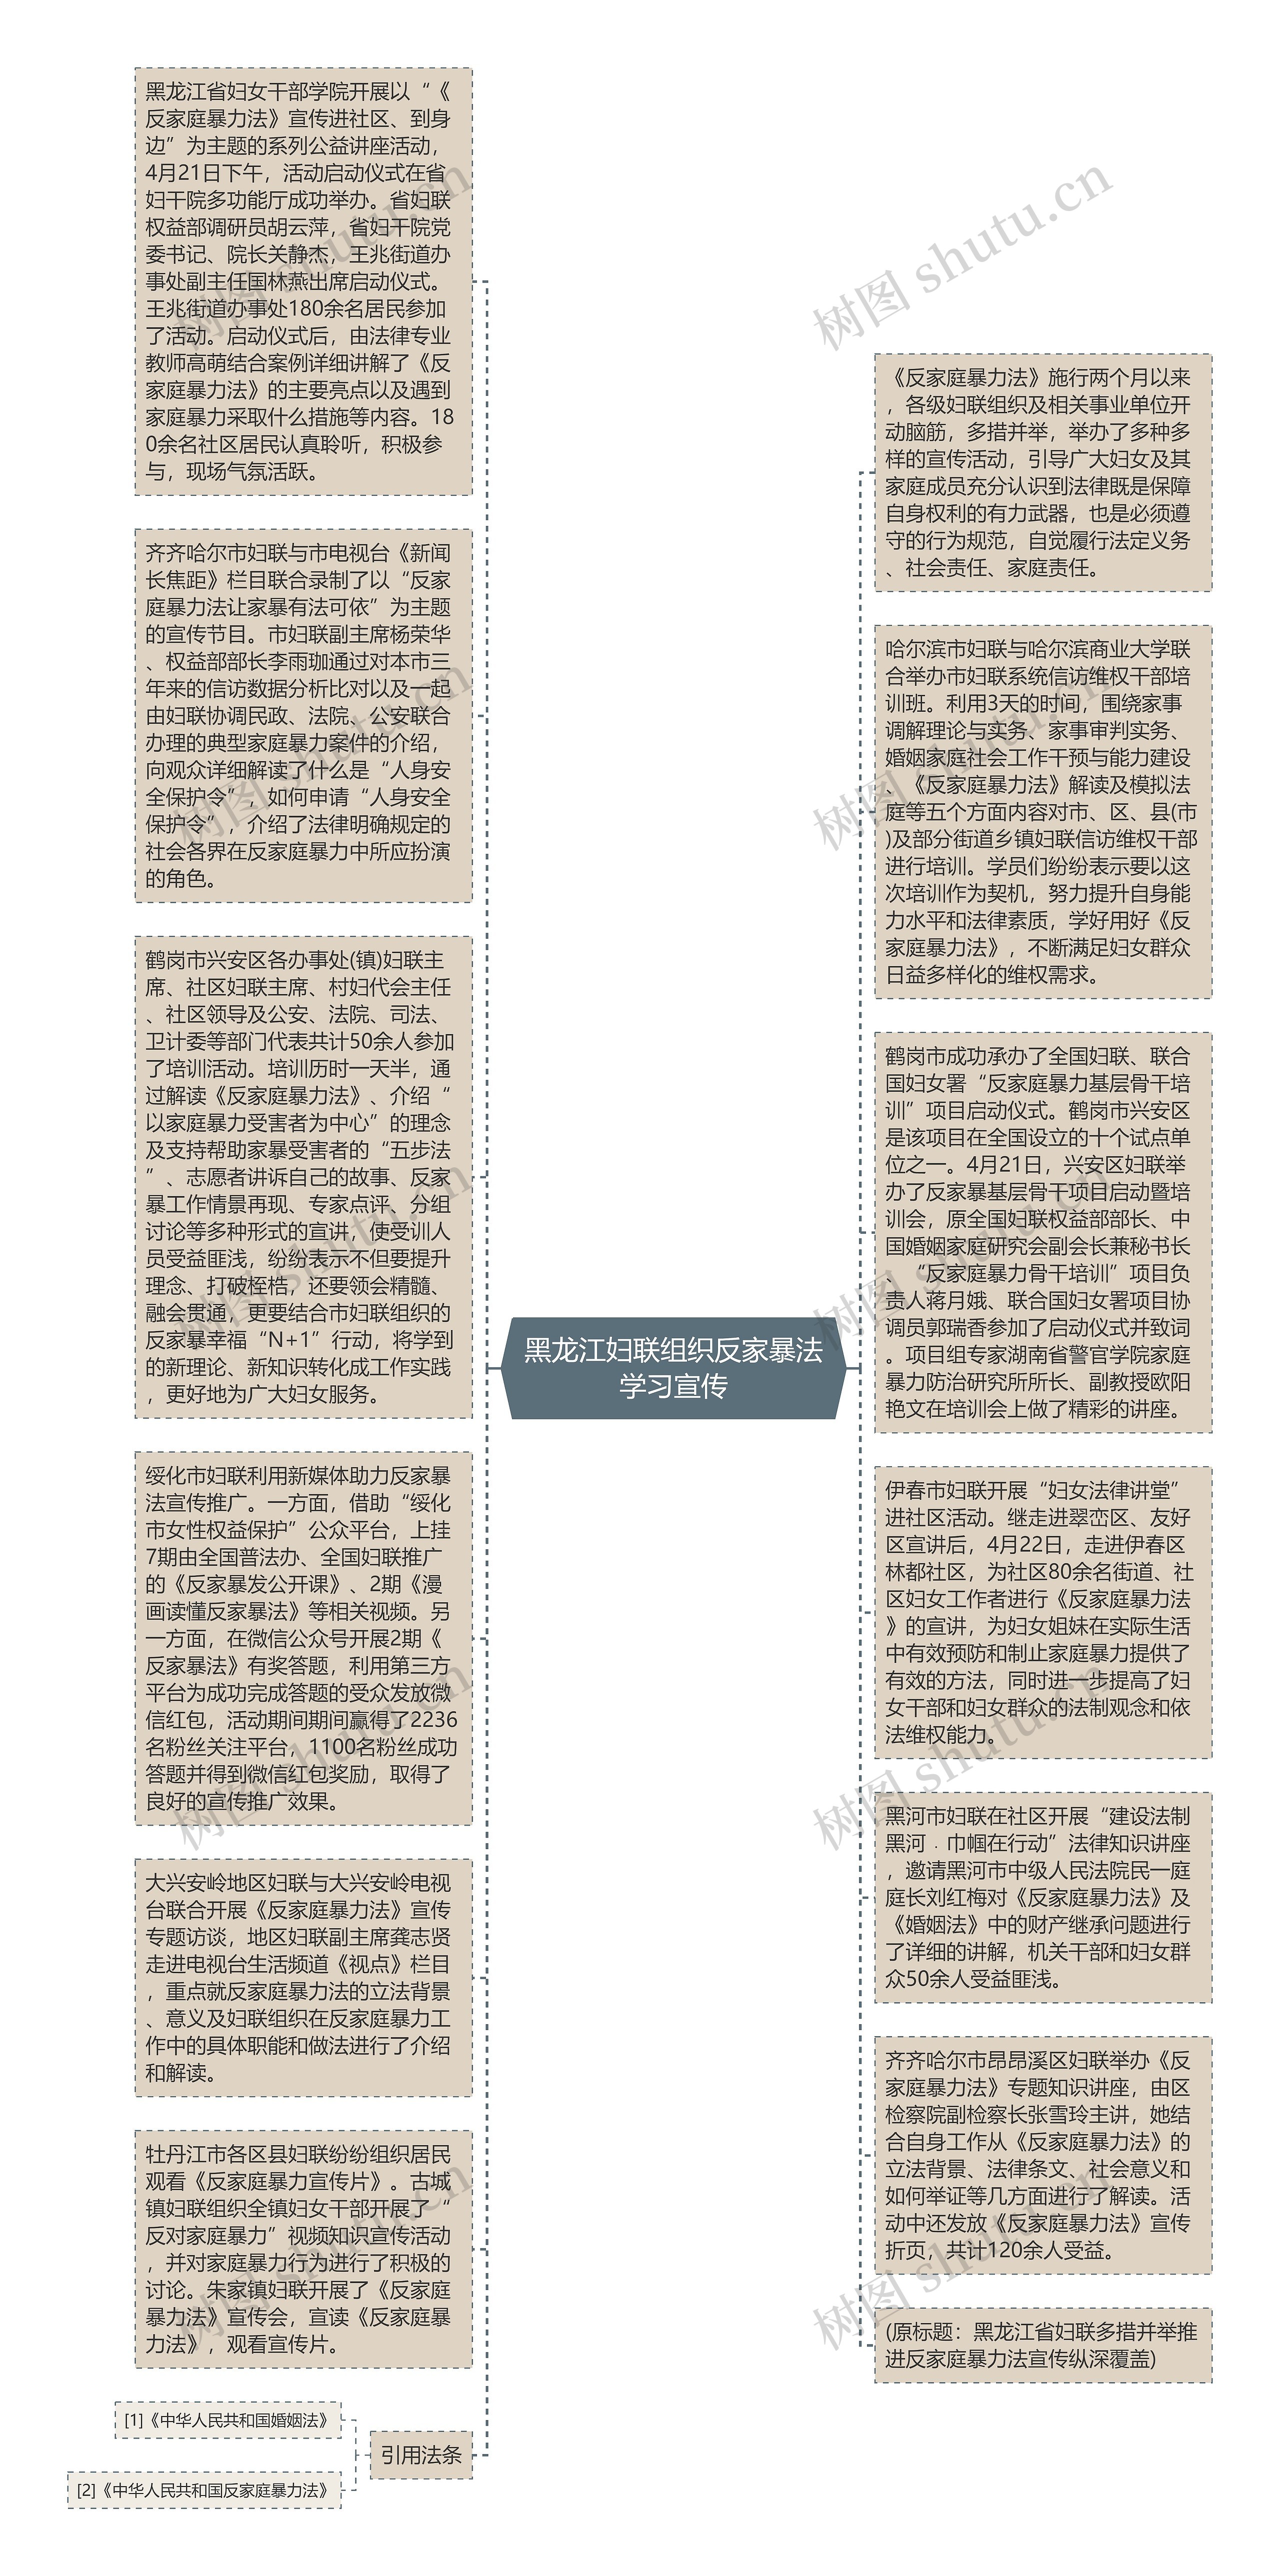 黑龙江妇联组织反家暴法学习宣传